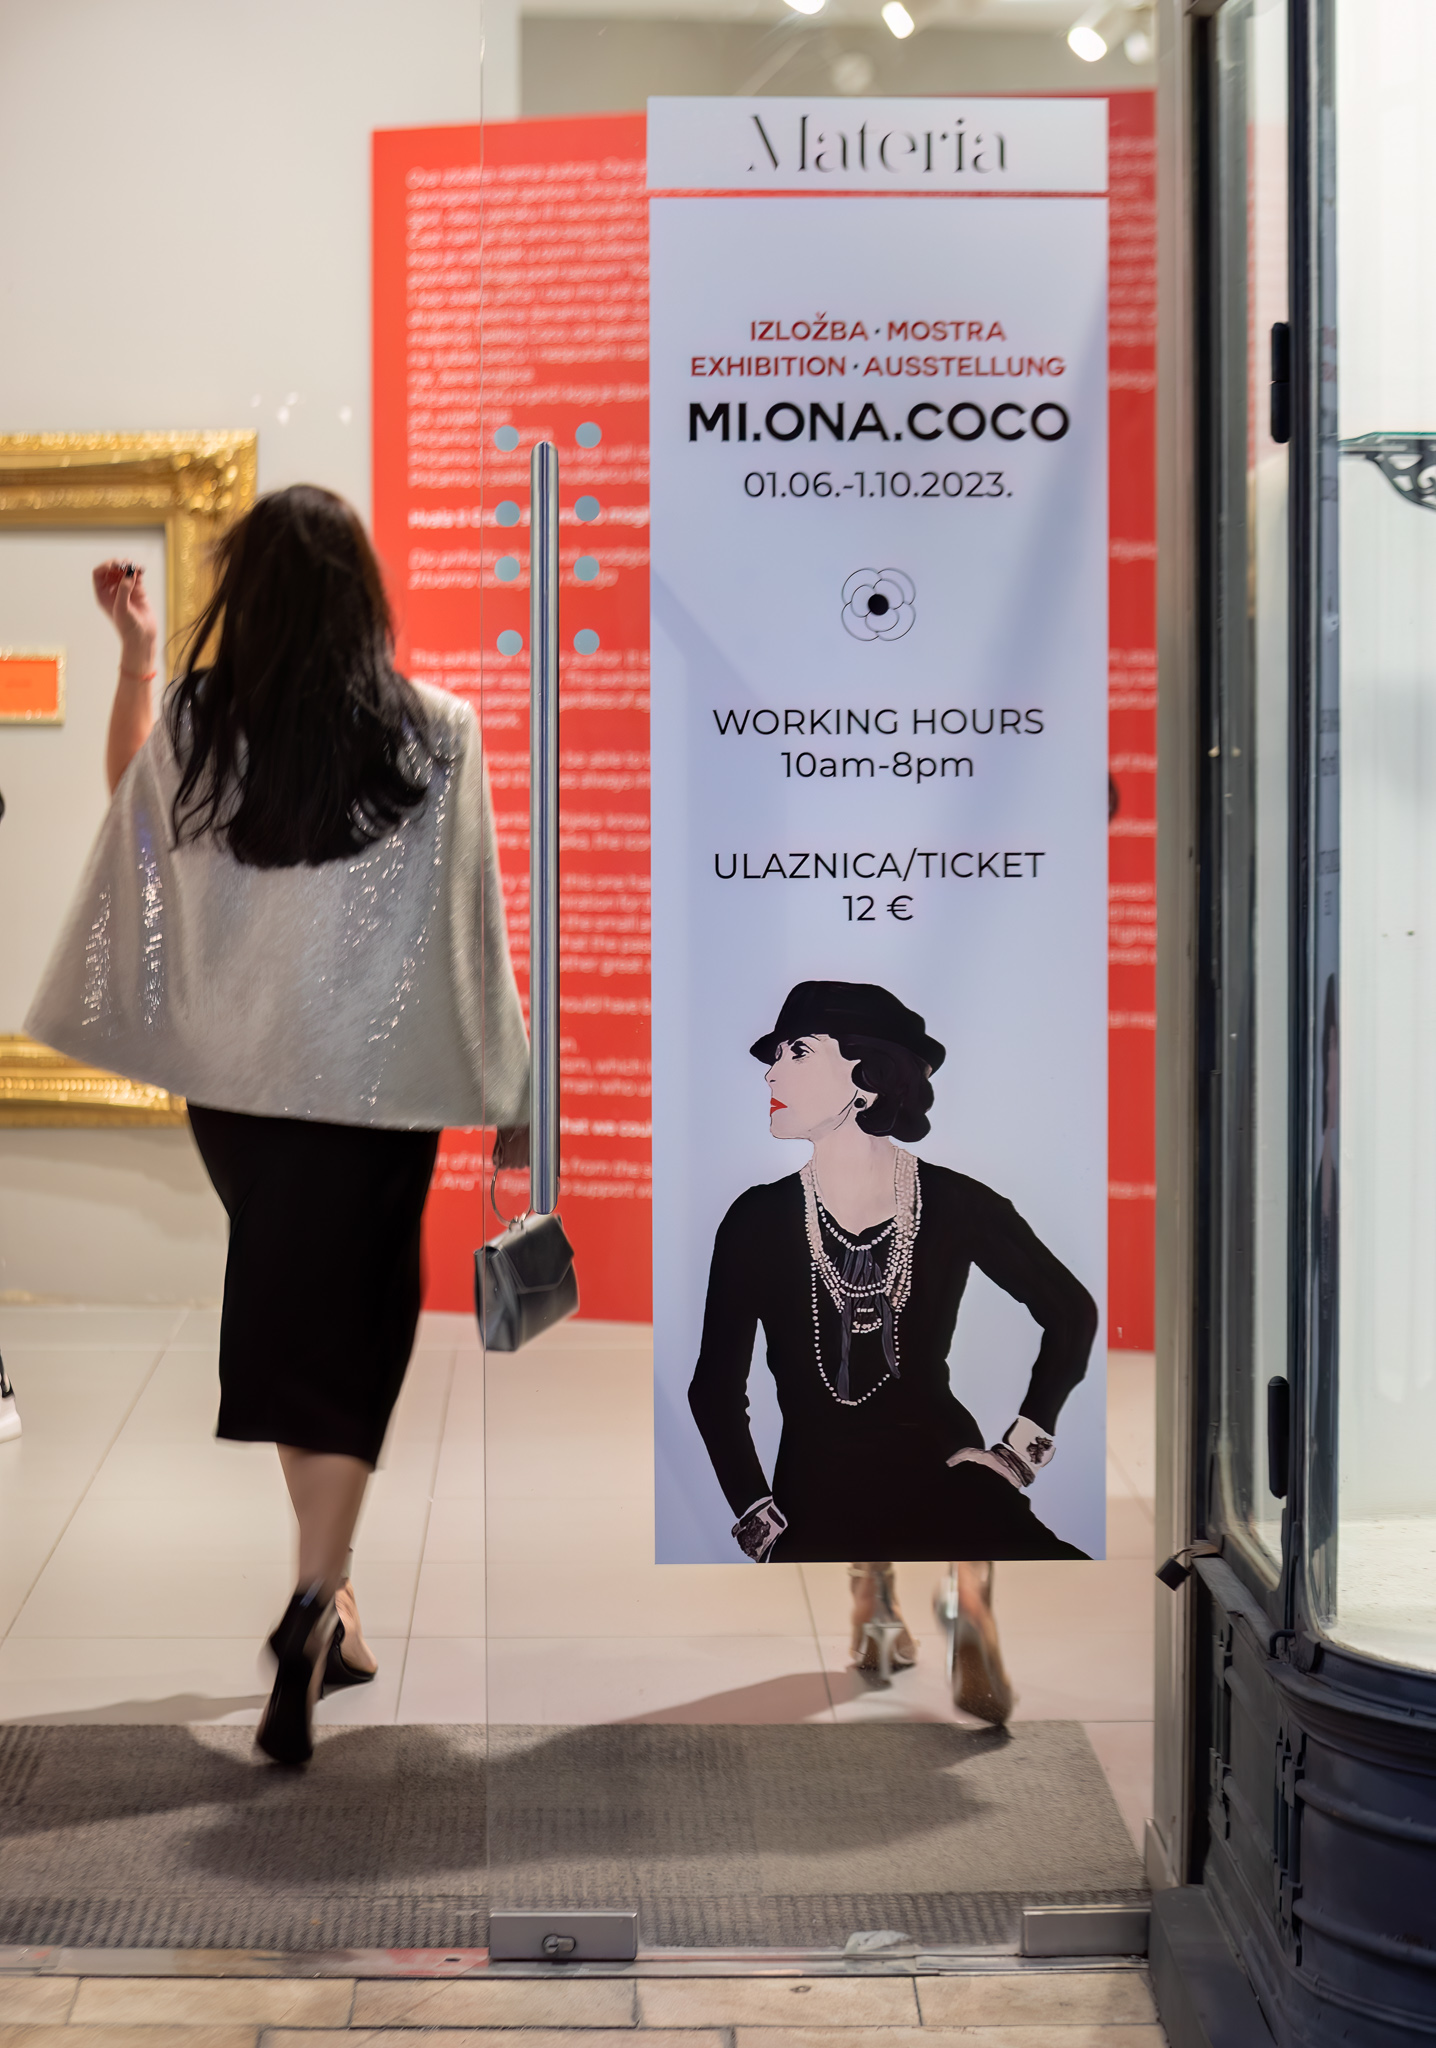 U srcu Rijeke otvorena posebna izložba posvećena životu Coco Chanel - "Mi.Ona.Coco"